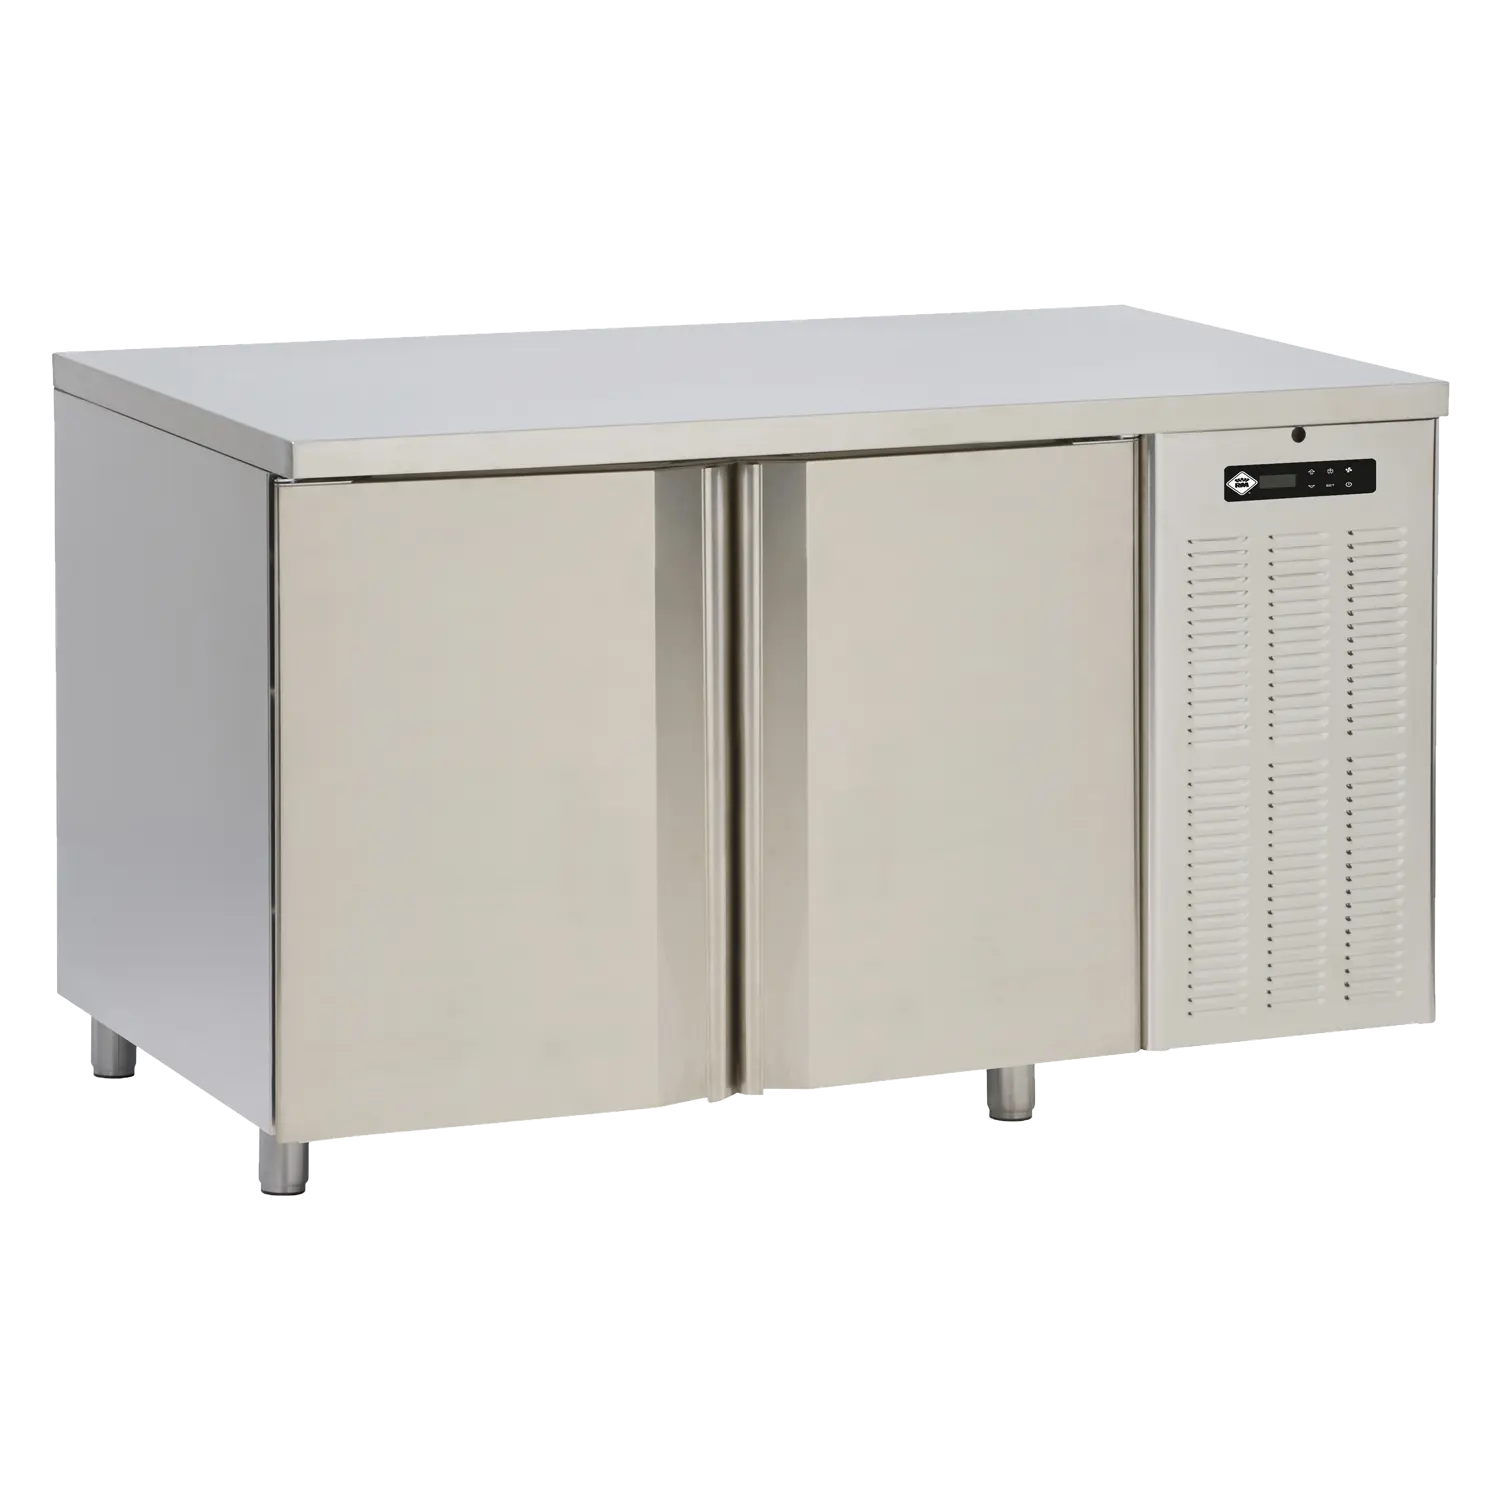 Stůl chladicí elektrický GN1/1, 2 dveře, bez lemu nerez 230V | RM - SCH 2D DH